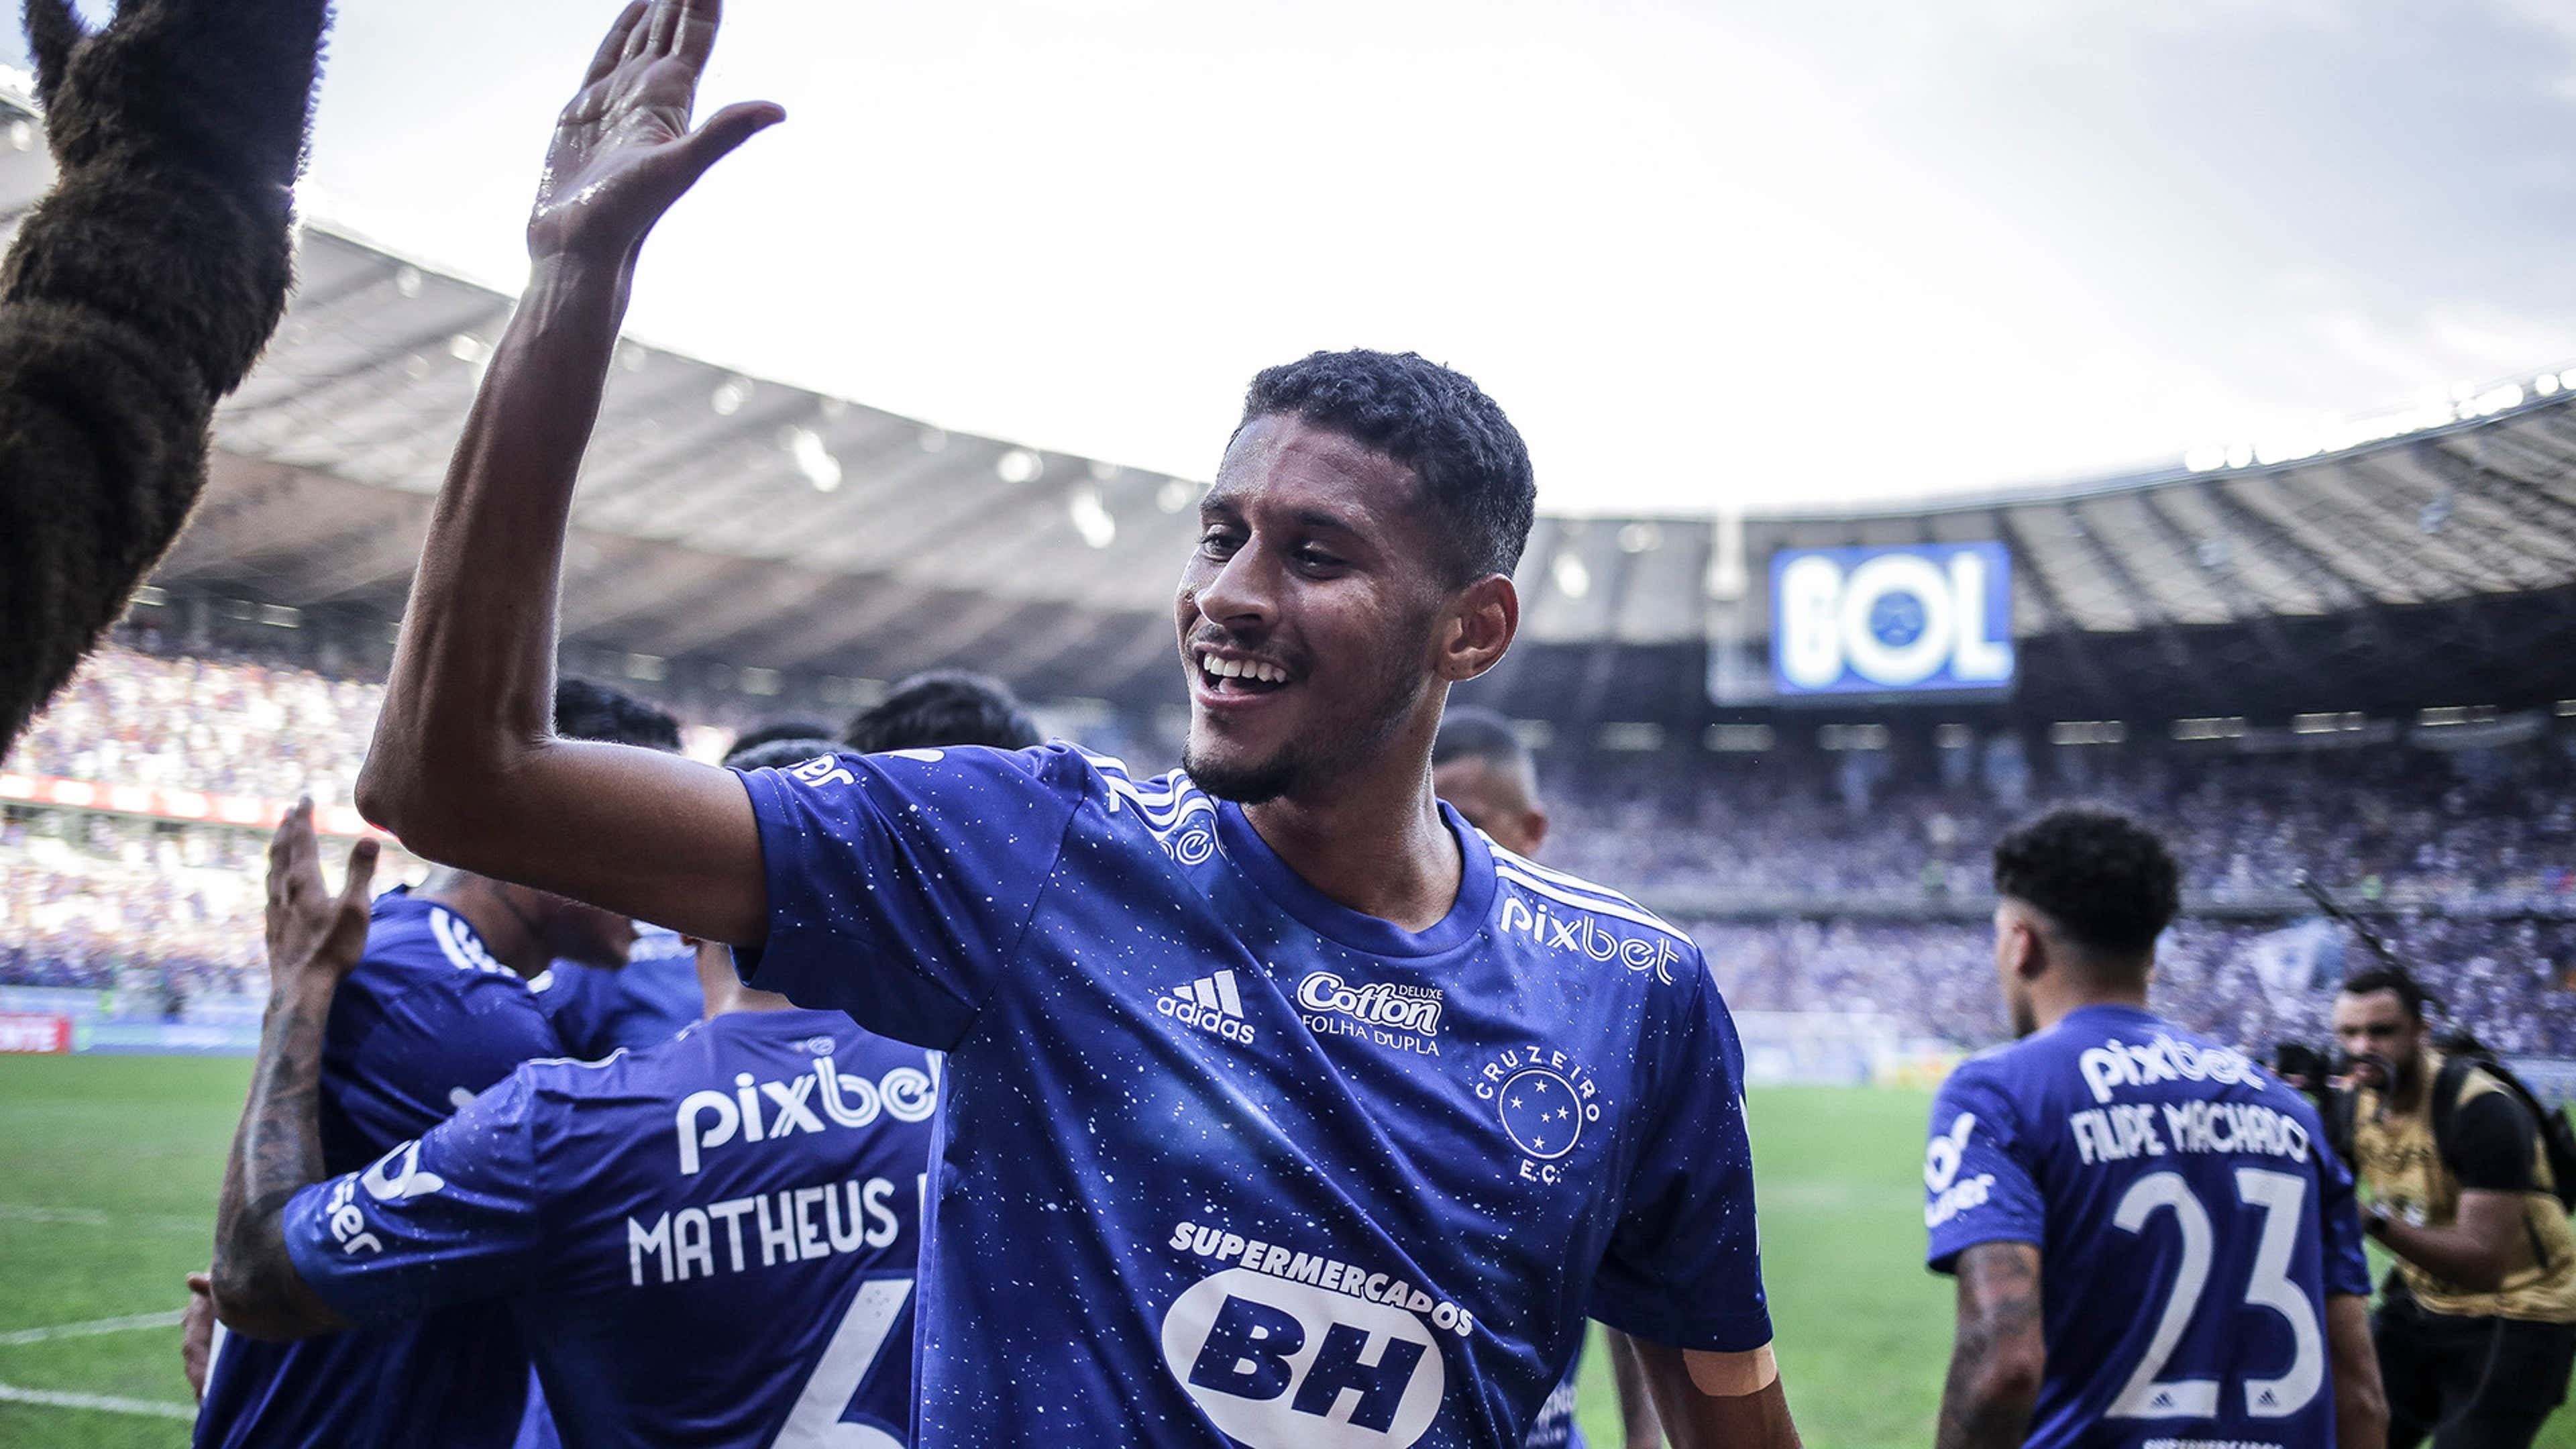 Vasco x Cruzeiro: retrospecto, prováveis escalações, arbitragem e